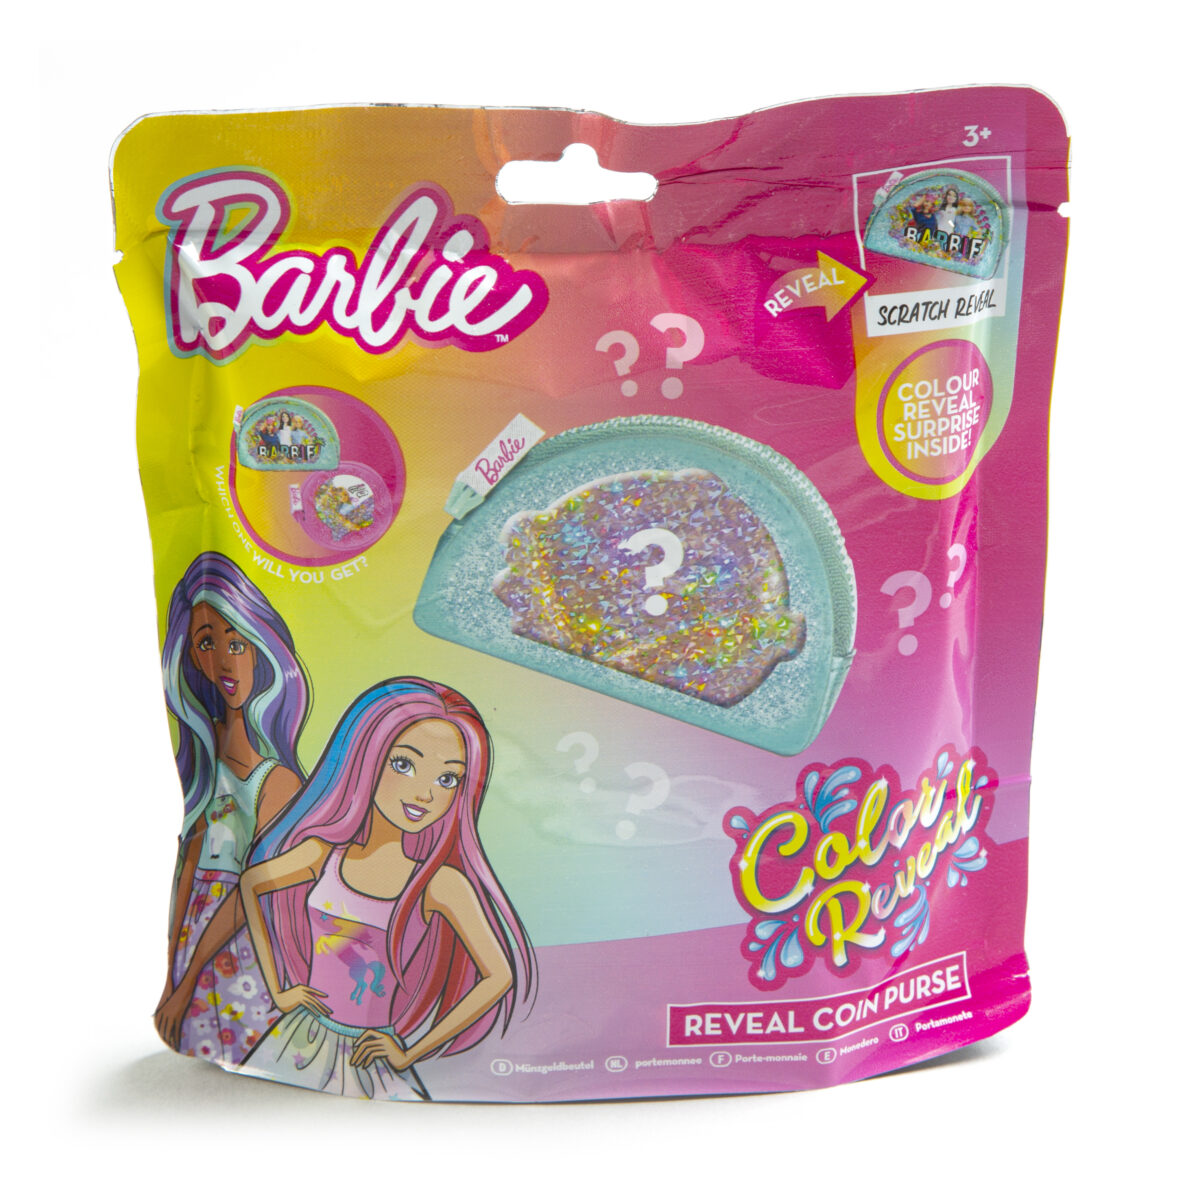 Barbie portmonetka 2 wz.